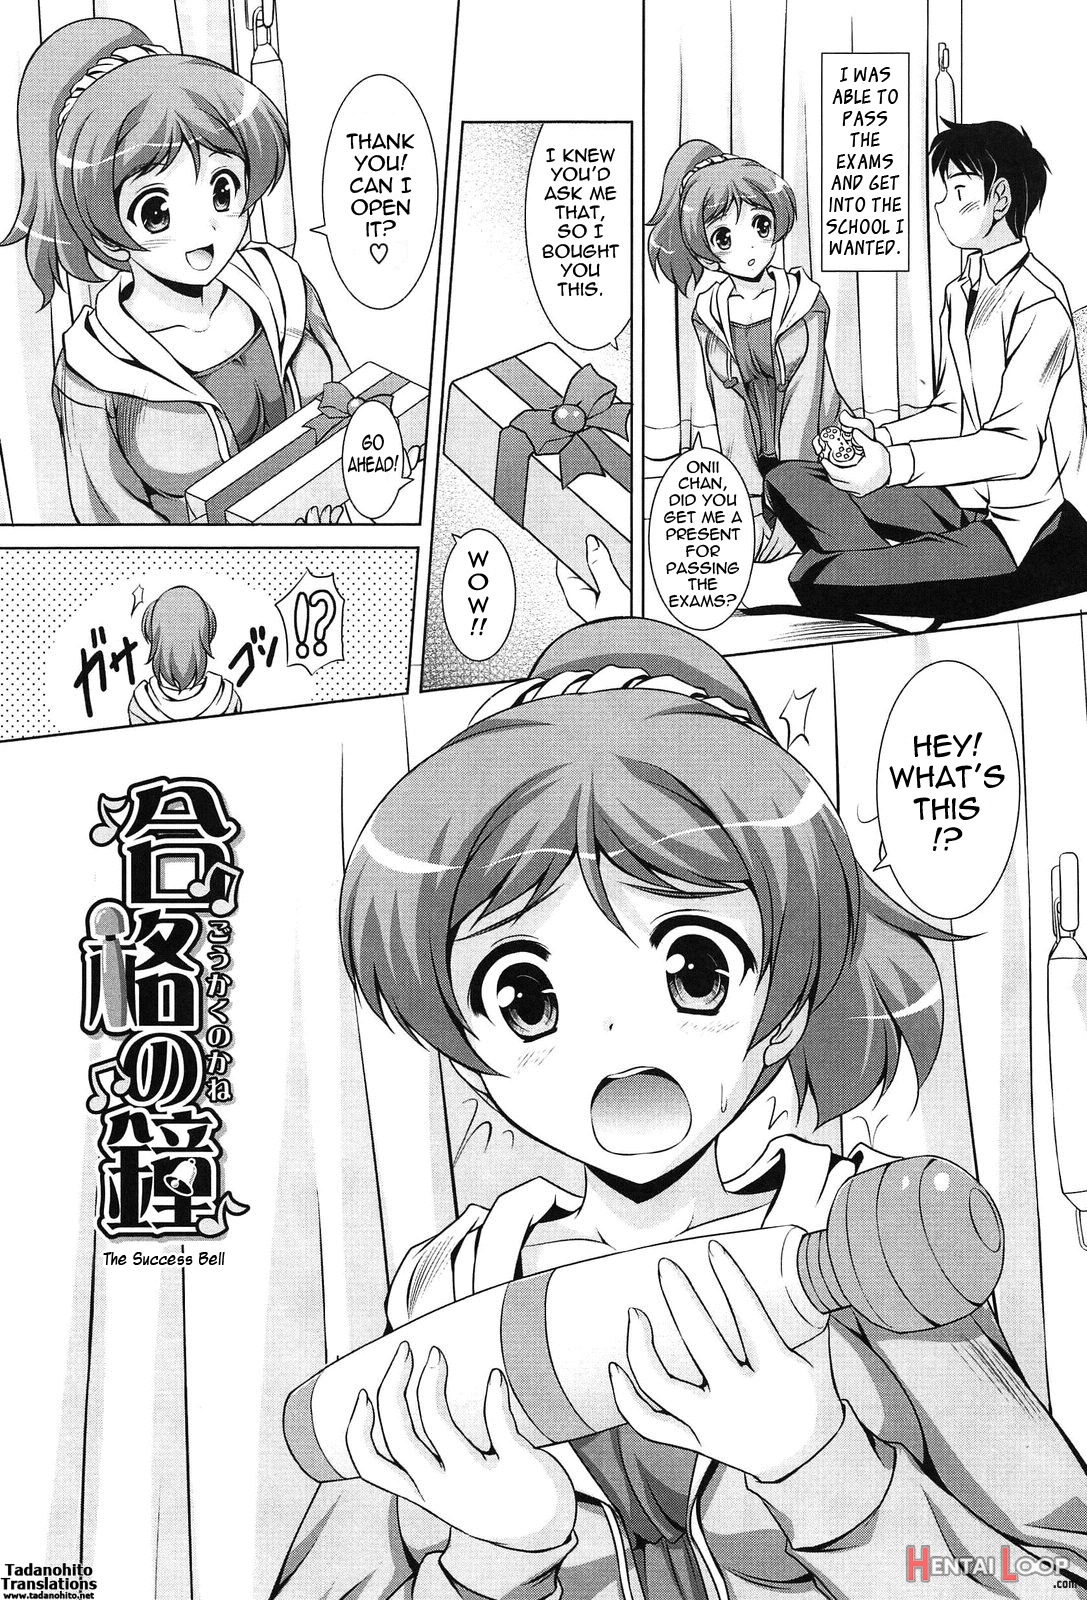 Toshishitakko! Celebration - Younger Girls! Celebration page 24